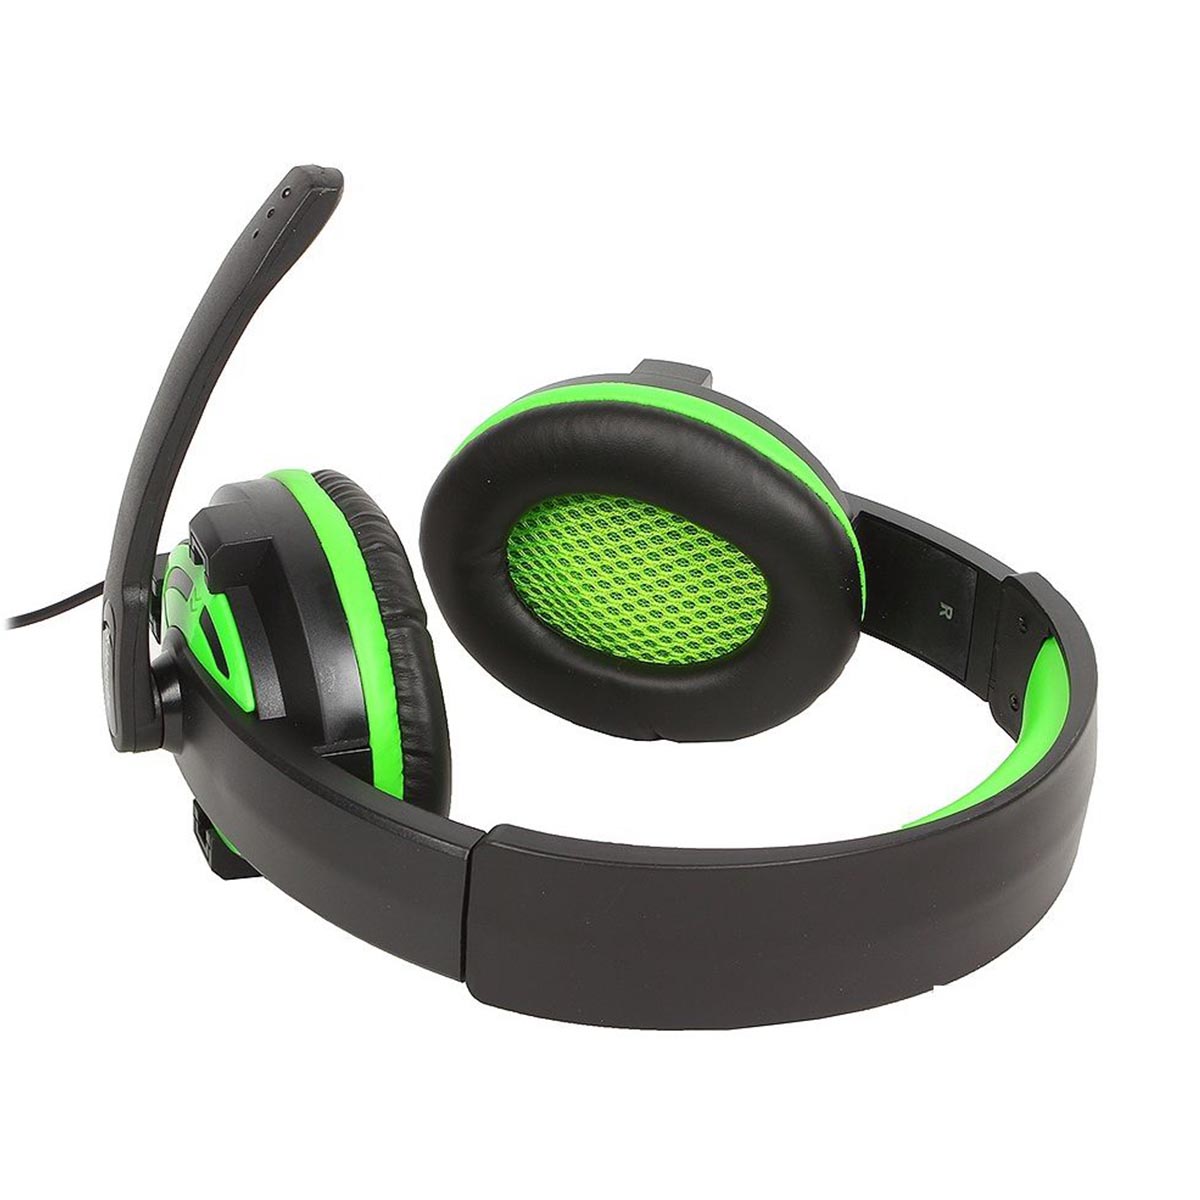 Гарнитура (наушники с микрофоном) проводная полноразмерная, Defender Warhead G-300, цвет черно зеленый